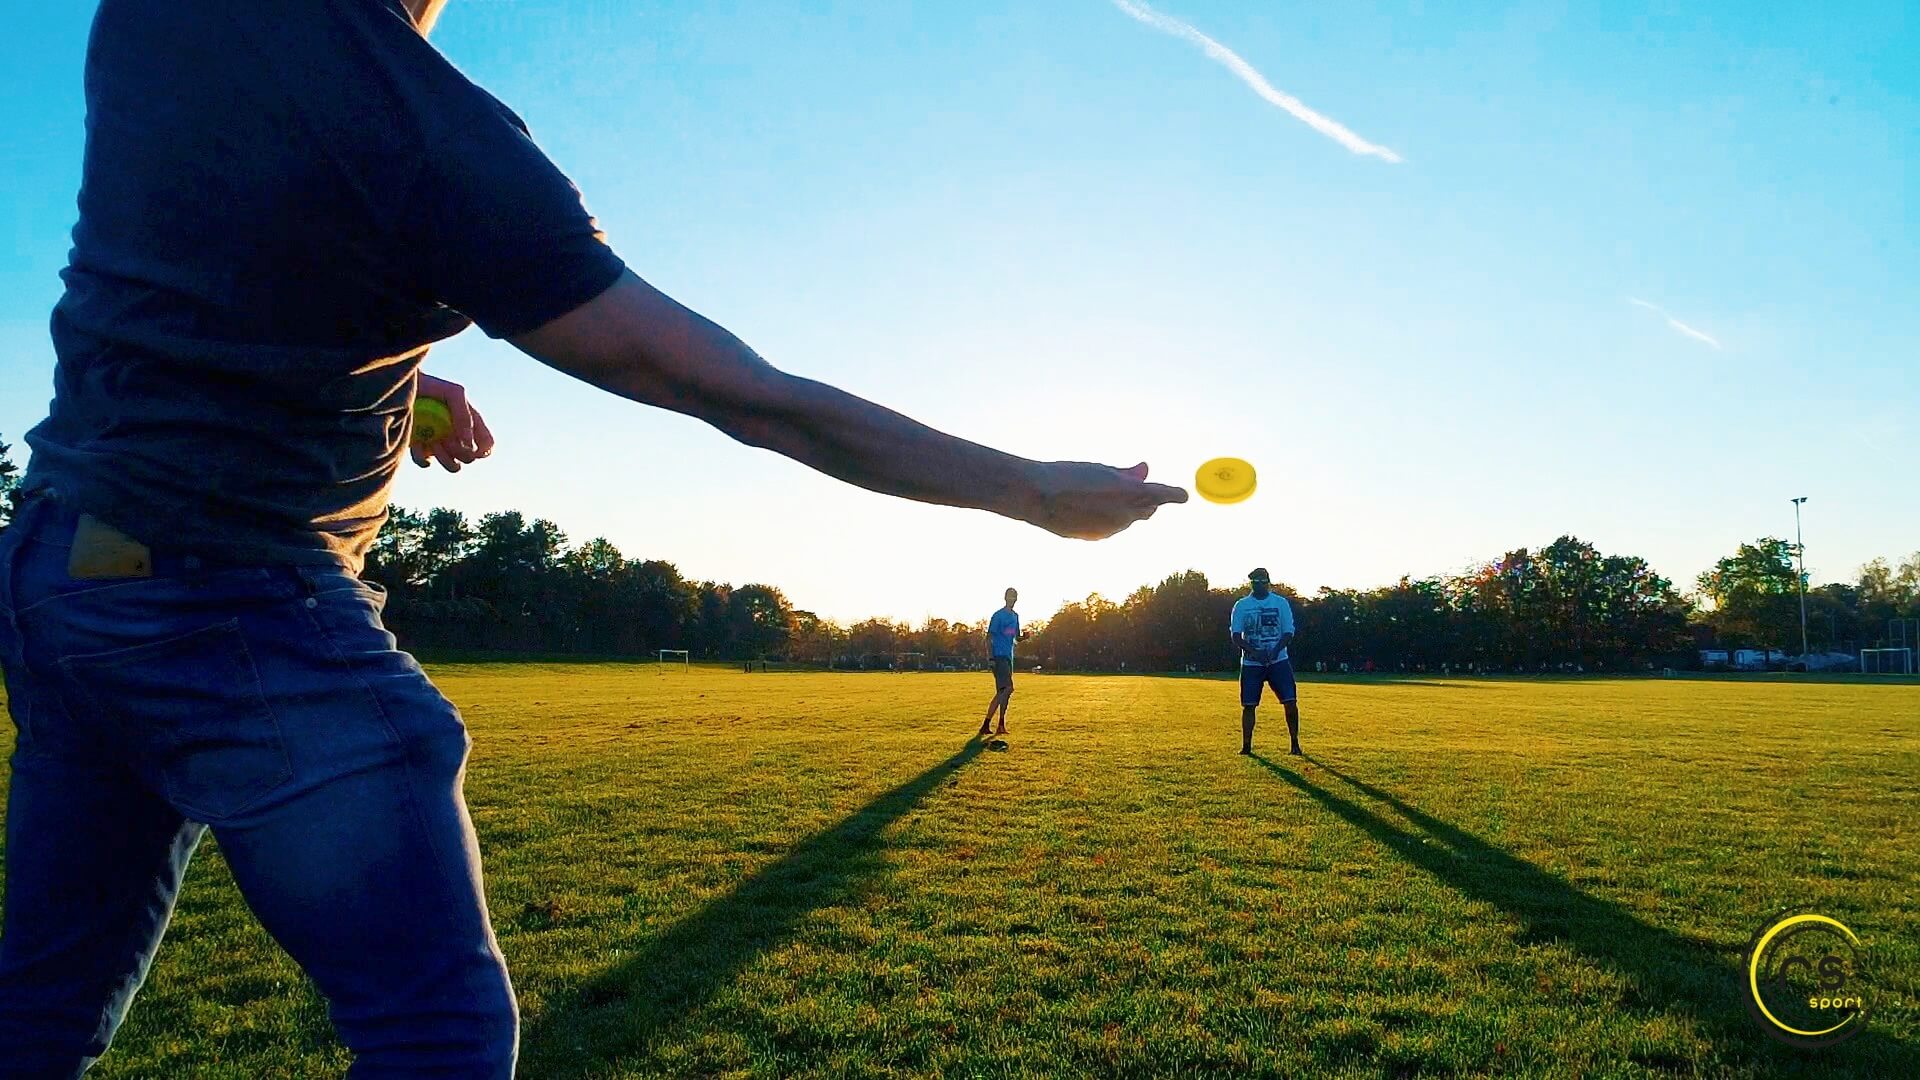 Mini Frisbee richtig werfen – Unsere 3 besten Tipps